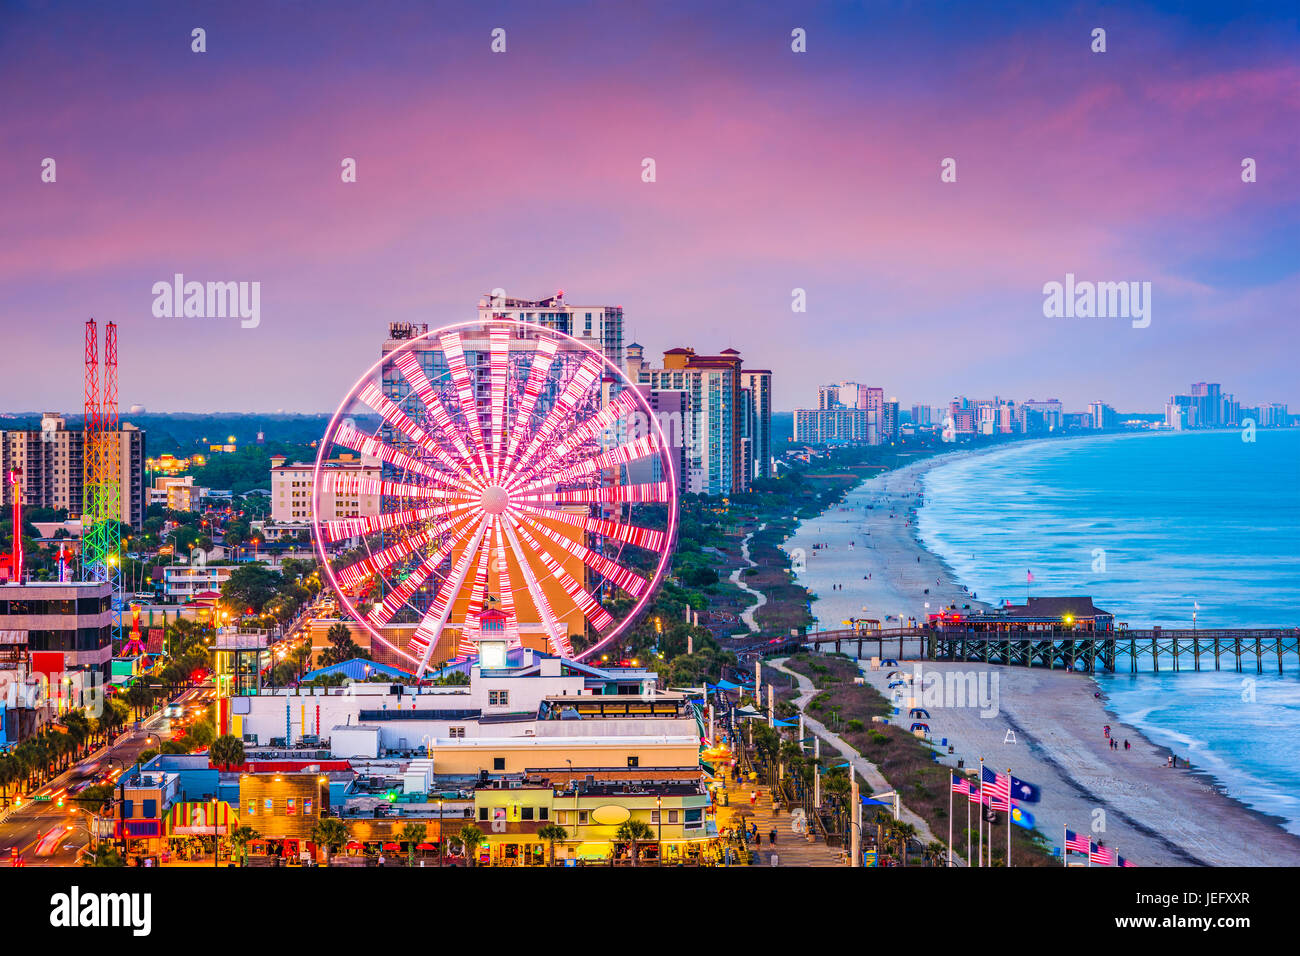 Myrtle Beach, South Carolina, USA city skyline. Stock Photo